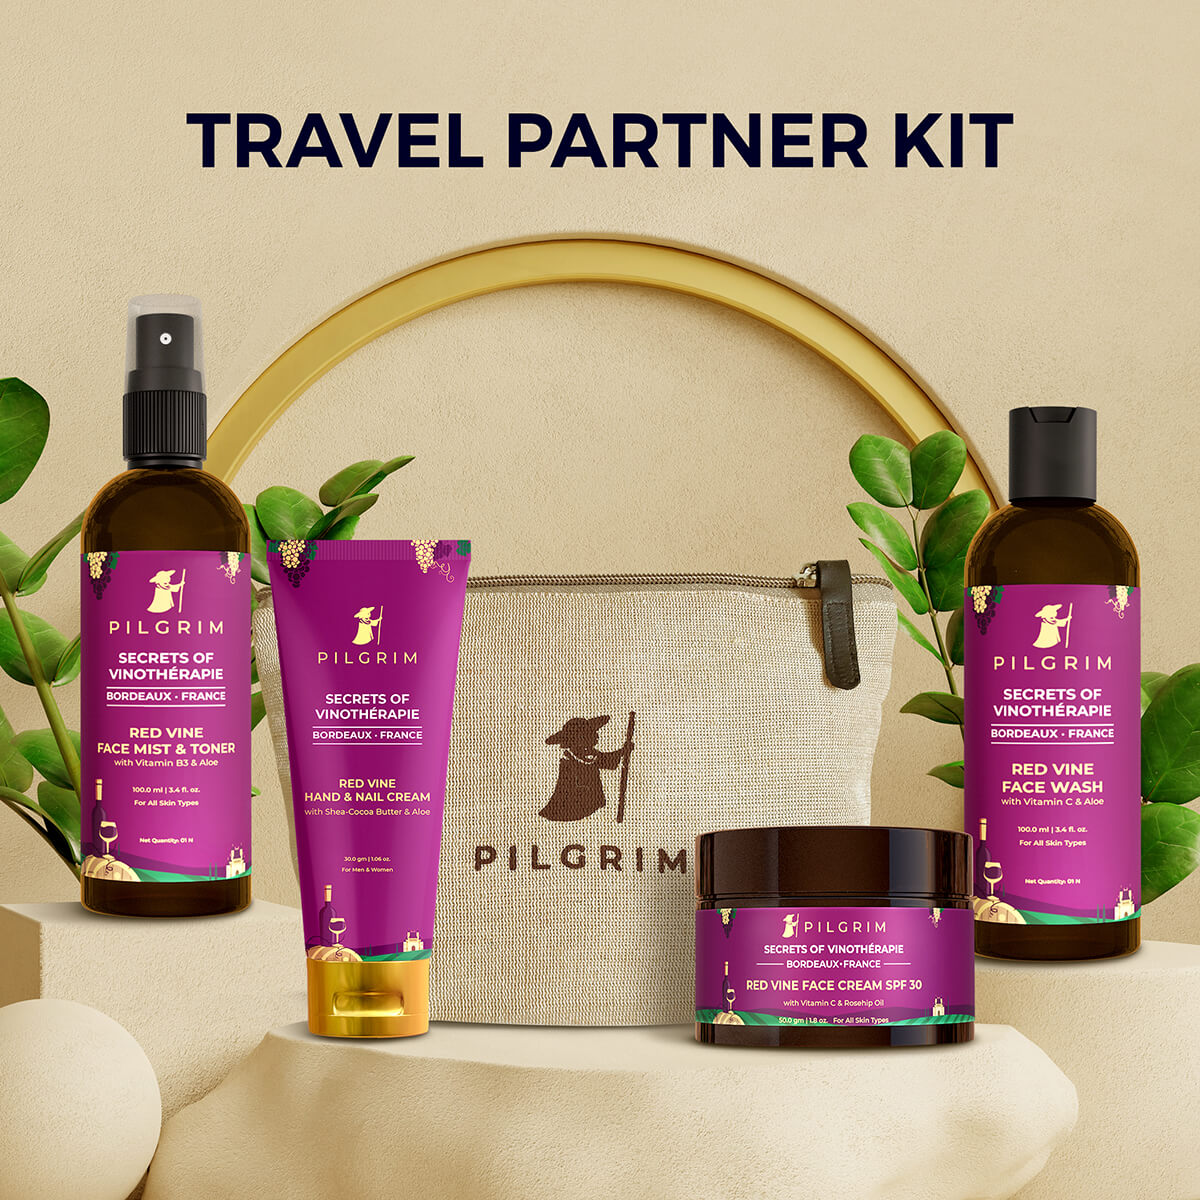 Travel Partner Kit